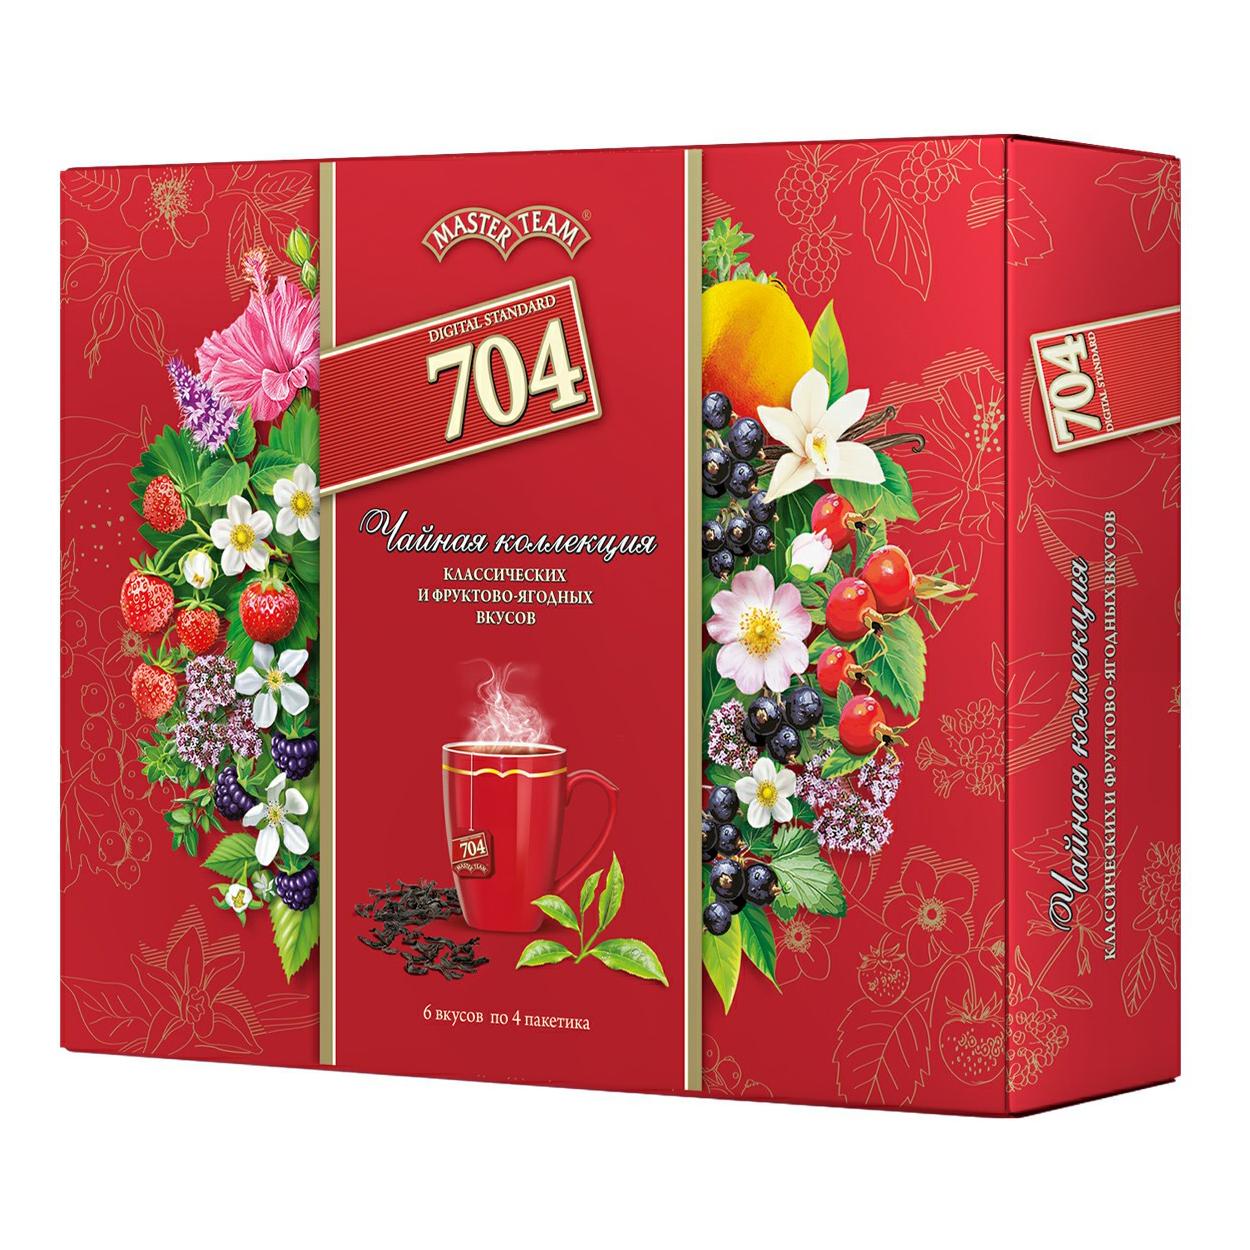 Набор чая Master Team Чайная коллекция ассорти №1 6 вид*4 пак, картон